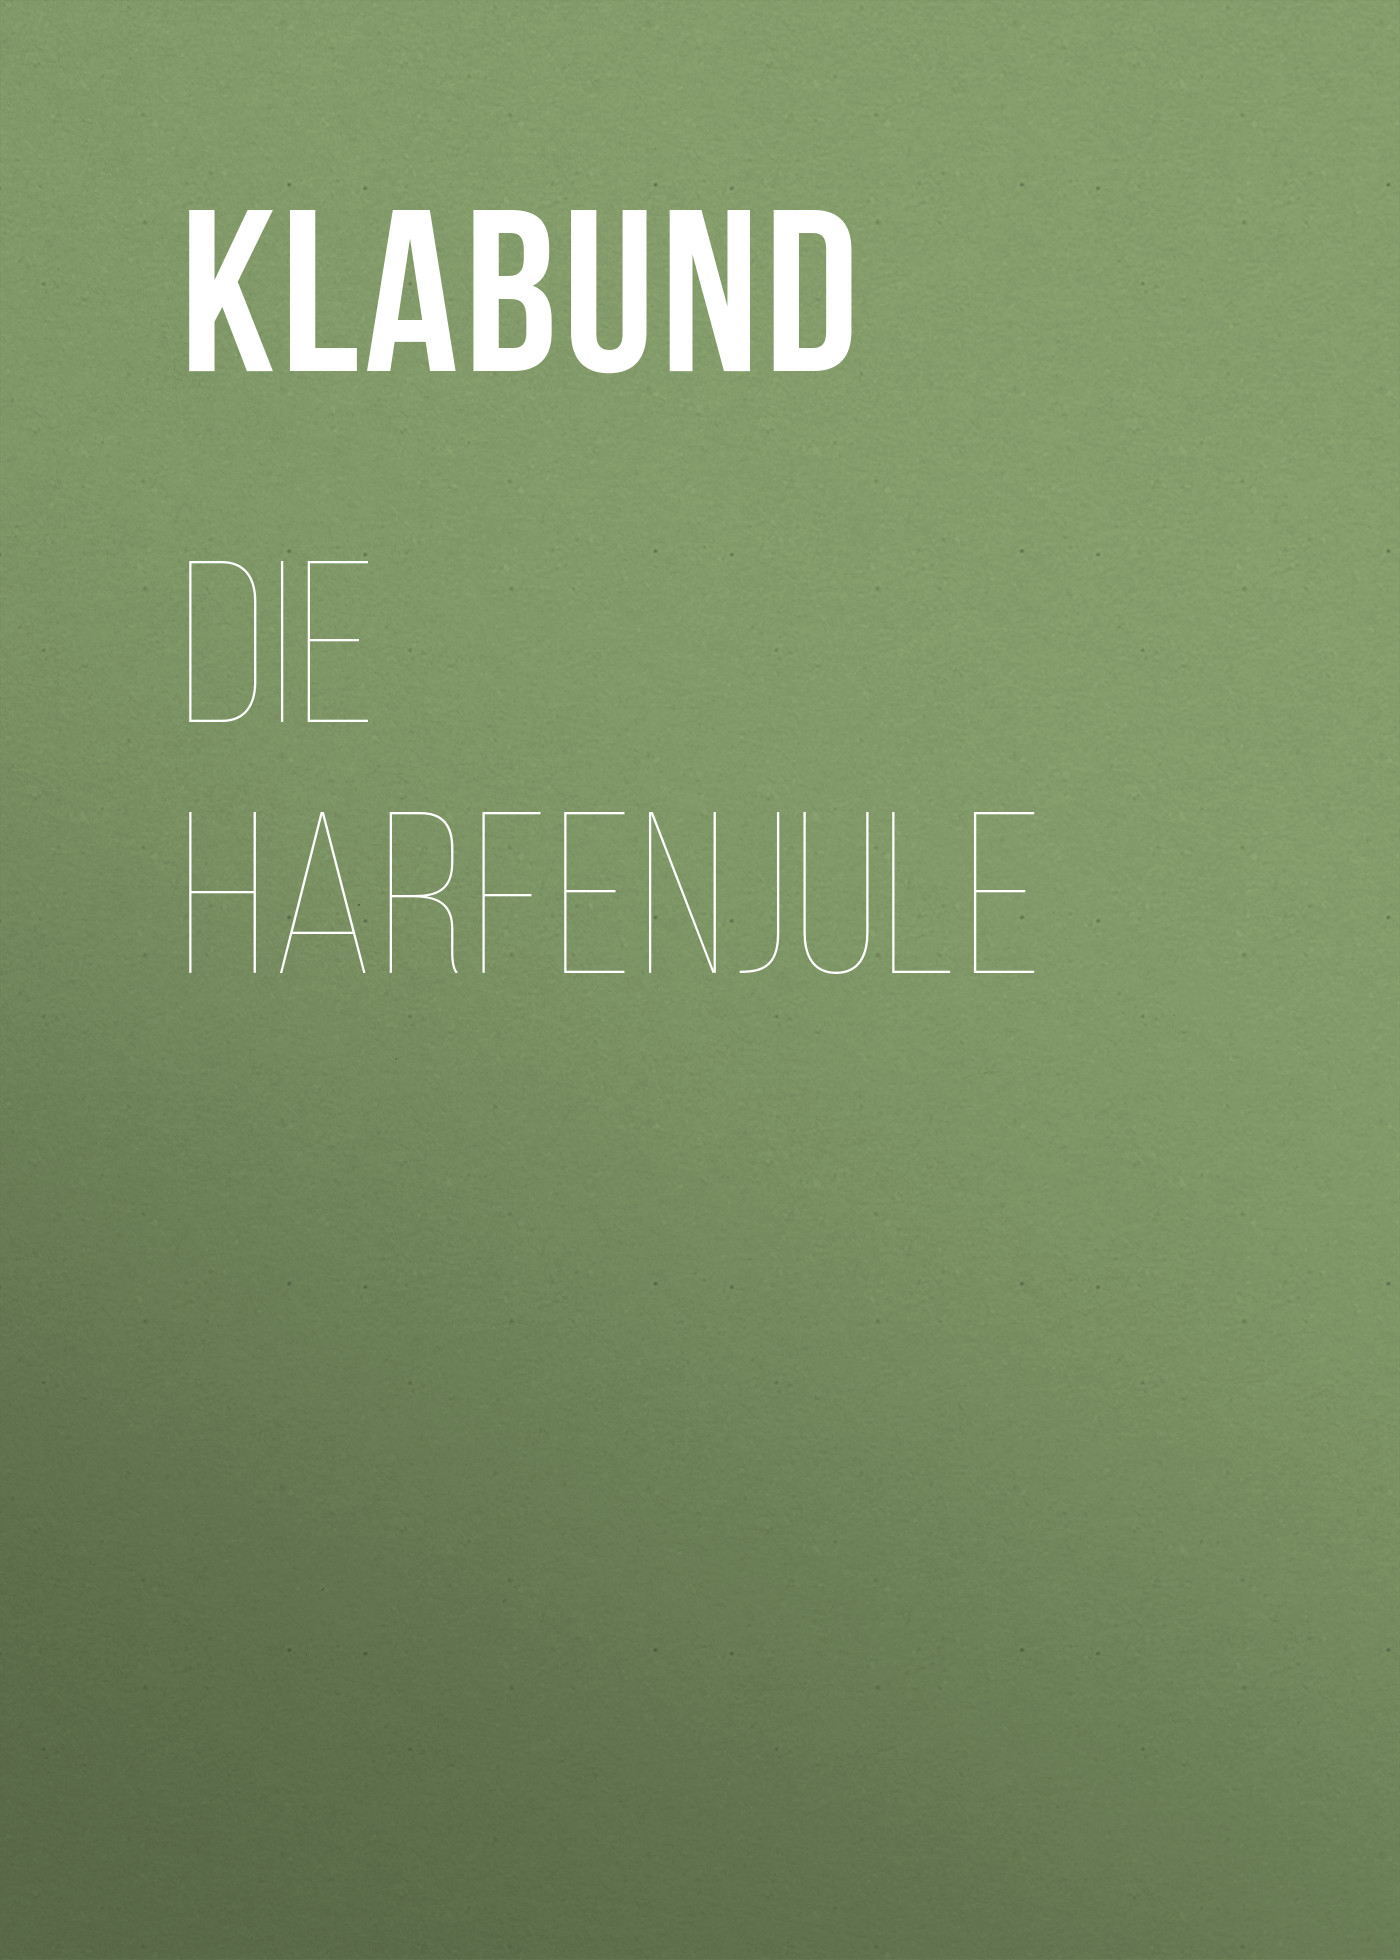 Книга Die Harfenjule из серии , созданная Klabund , может относится к жанру Зарубежная классика. Стоимость электронной книги Die Harfenjule с идентификатором 48633956 составляет 0 руб.